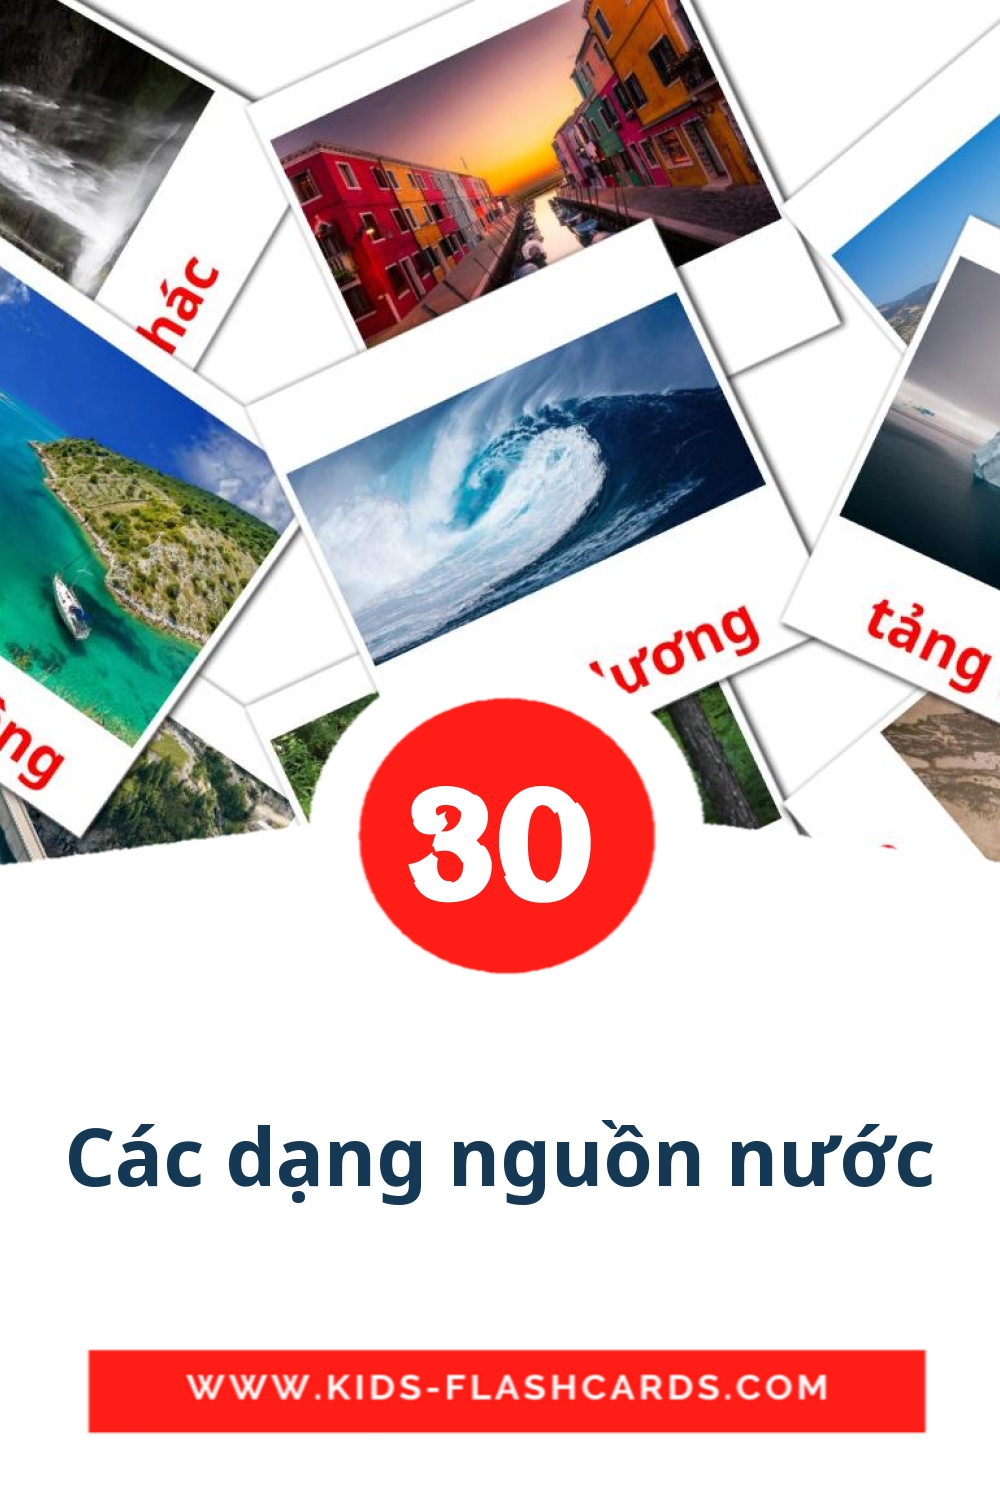 30 cartes illustrées de Các dạng nguồn nước pour la maternelle en vietnamien